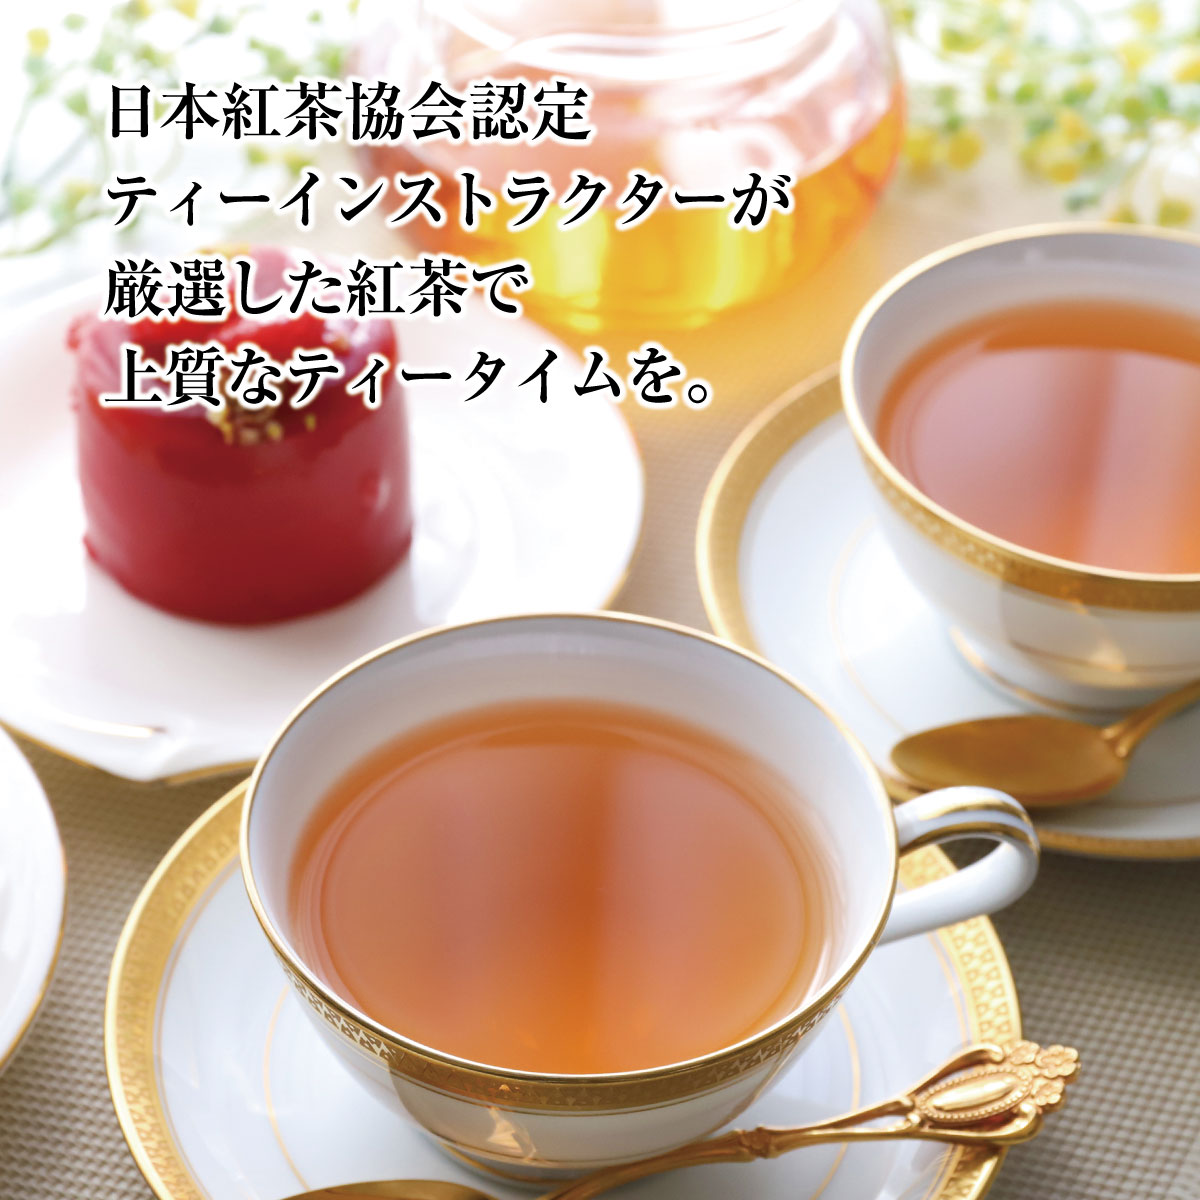  black tea ro The -ju tea leaf (50g) flavor tea small rice field sudden mountain. hotel salon *do* terrorism The -ju original Blend 